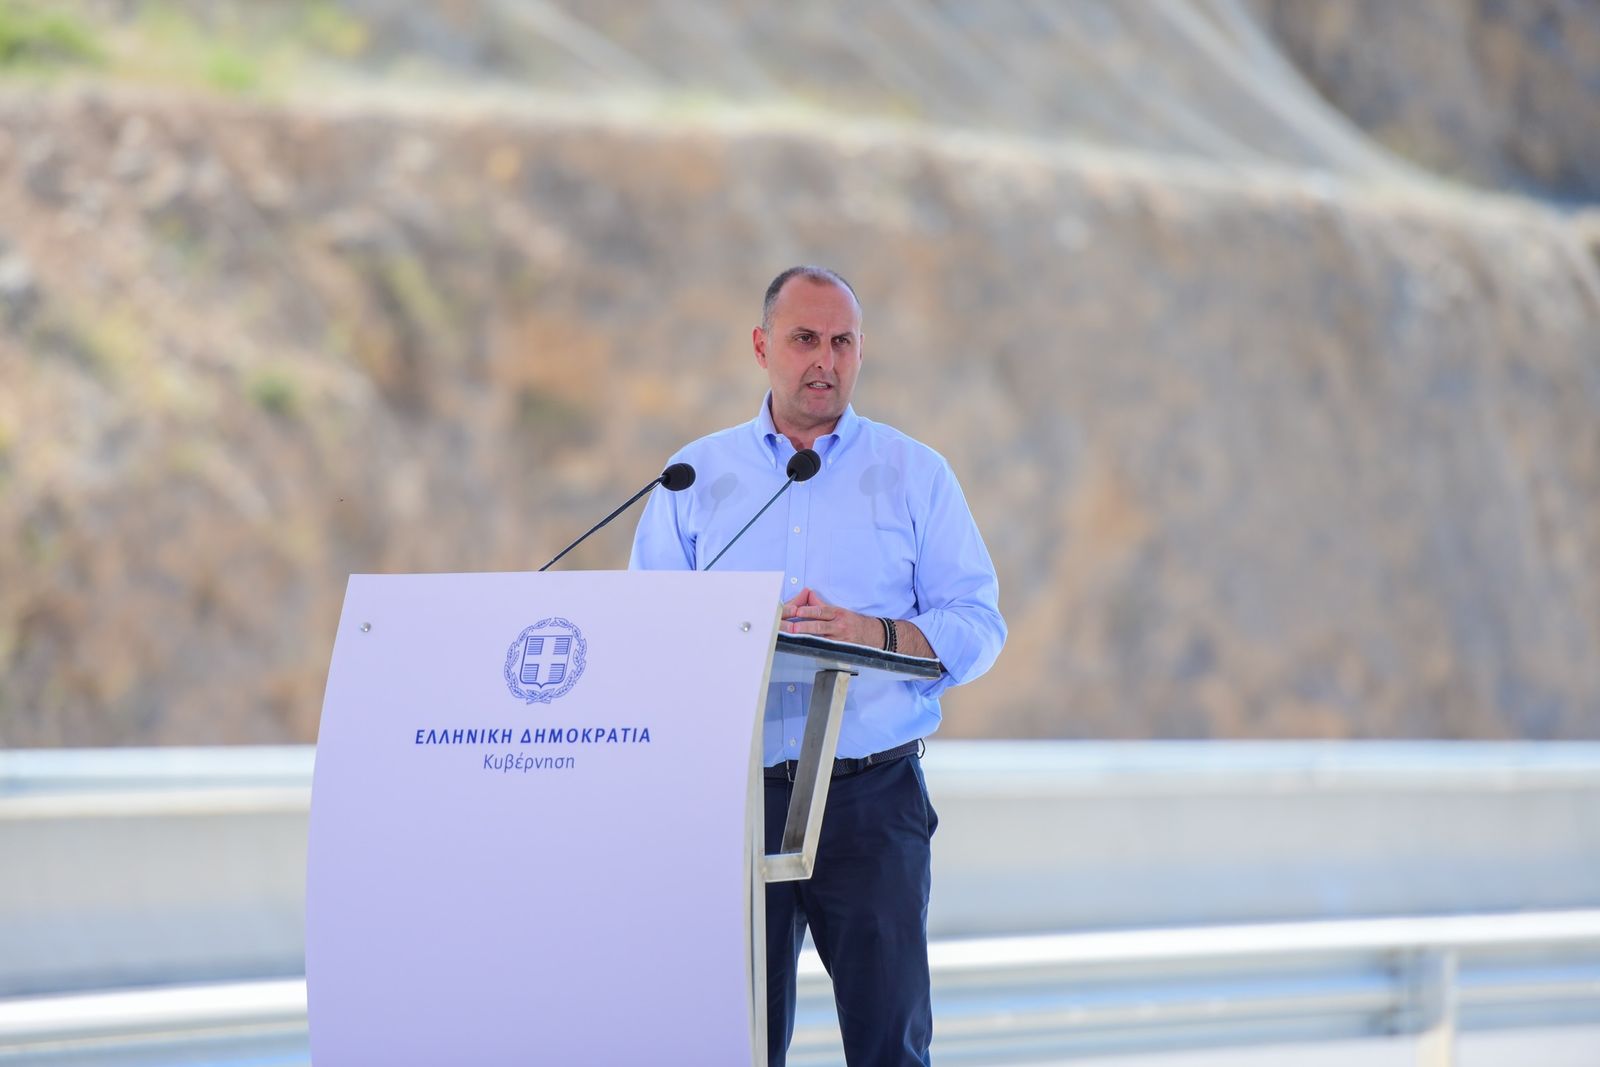 Γιώργος Καραγιάννης: Έχουμε δημοπρατήσει έργα 14 δισ. ευρώ - H Ελλάδα έχει μετατραπεί σε ένα εργοτάξιο